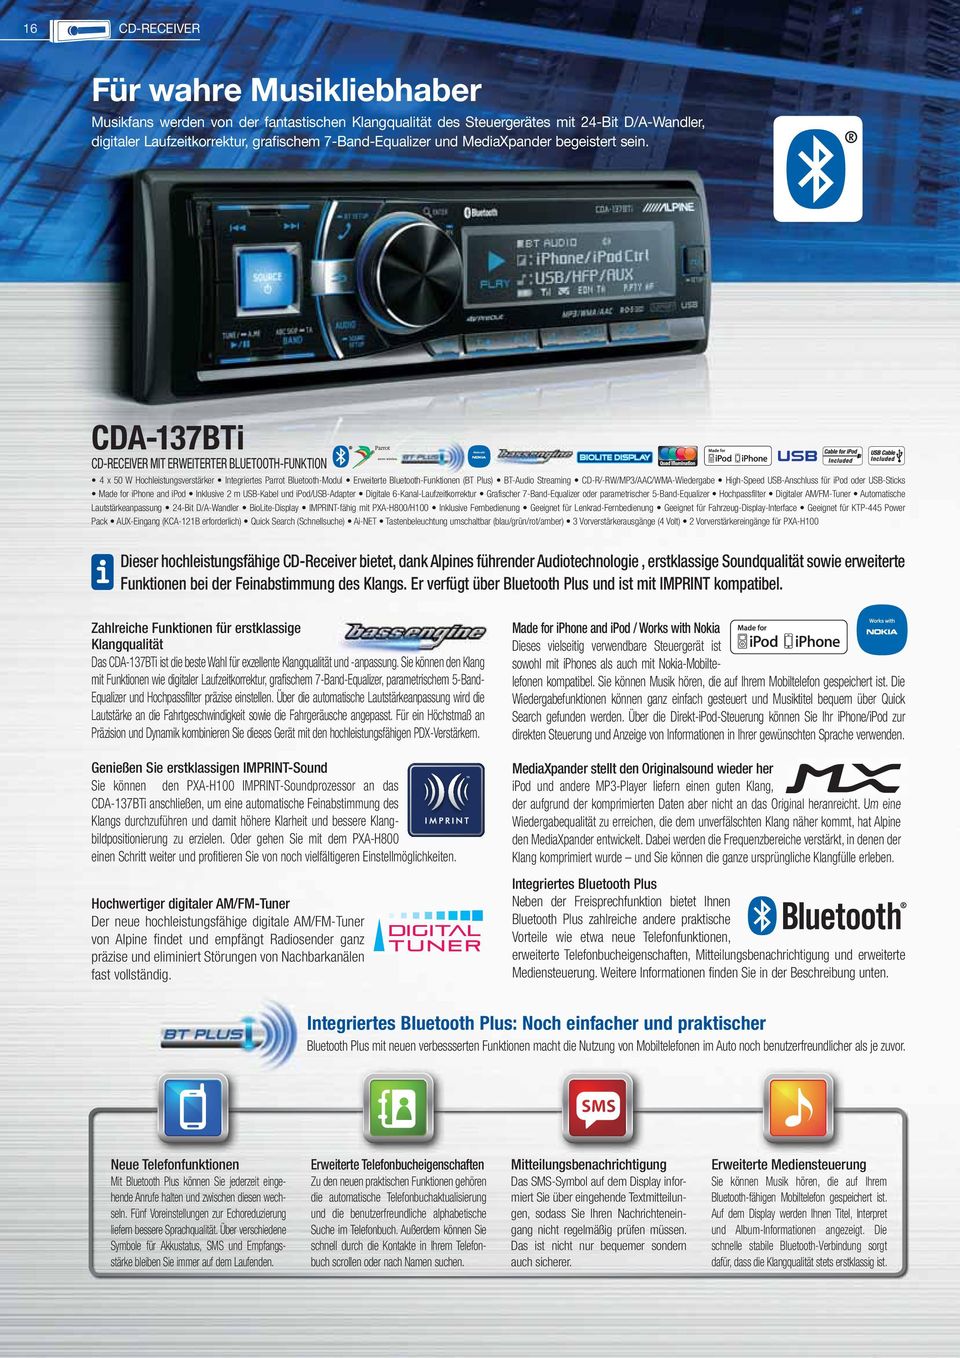 CDA-137BTi CD-RECEIVER MIT ERWEITERTER BLUETOOTH-FUNKTION 4 x 50 W Hochleistungsverstärker Integriertes Parrot Bluetooth-Modul Erweiterte Bluetooth-Funktionen (BT Plus) BT-Audio Streaming